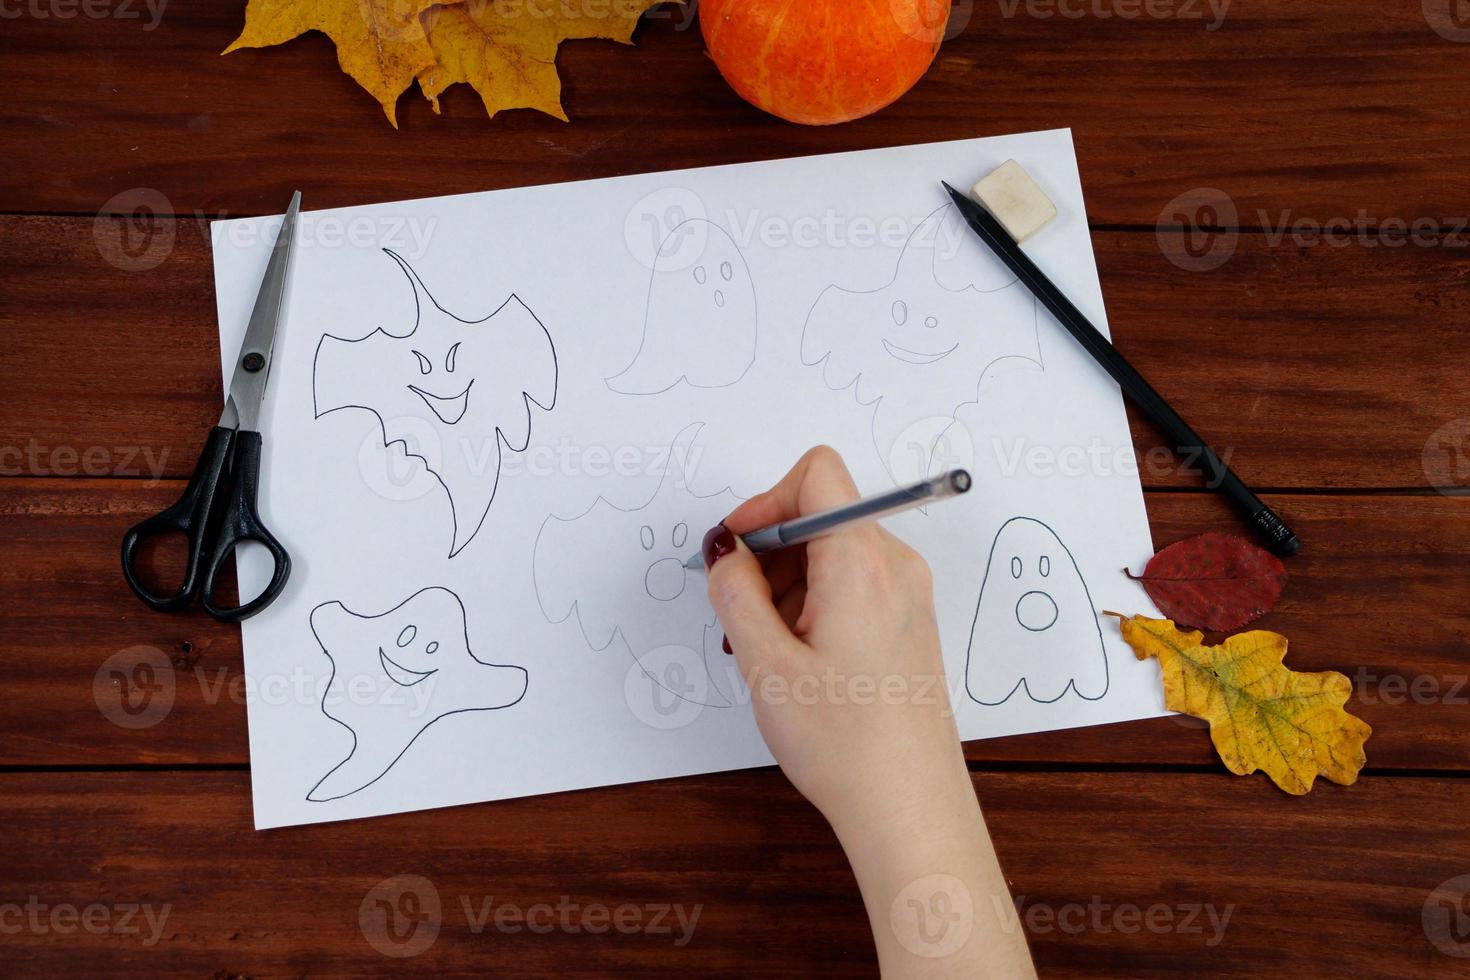 dia das bruxas diy. instruções passo a passo sobre como desenhar fantasmas engraçados. foto